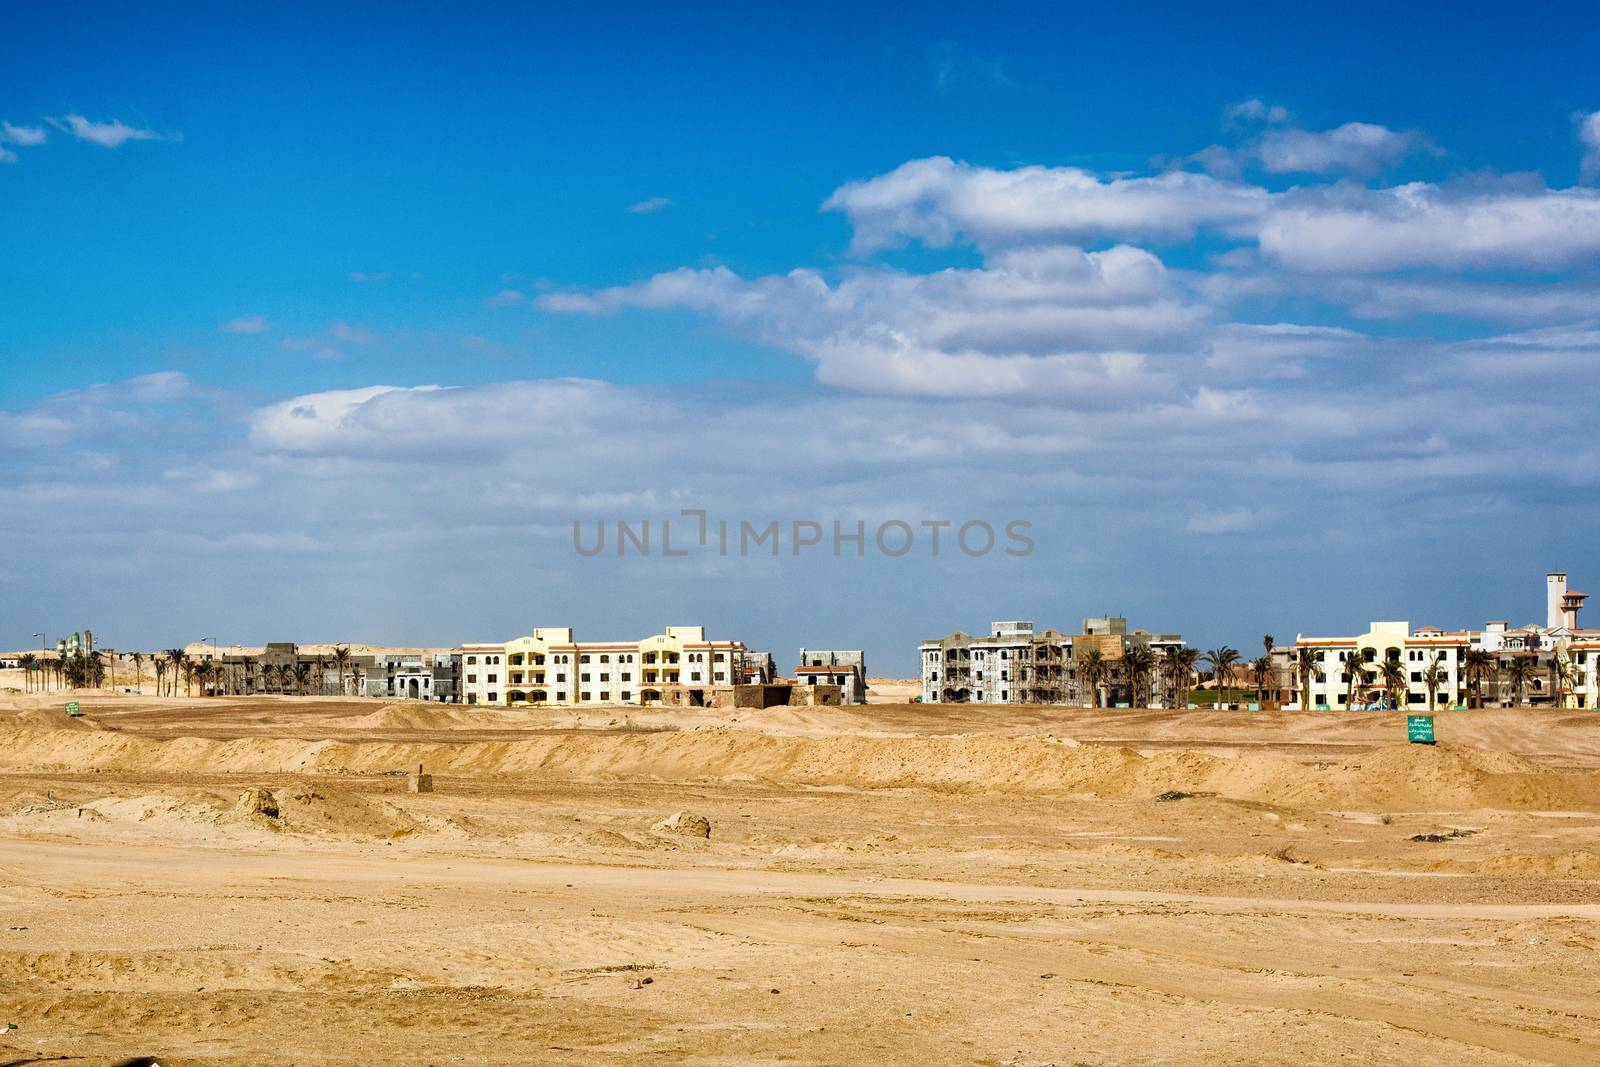 Skyline of desert city in Egypt